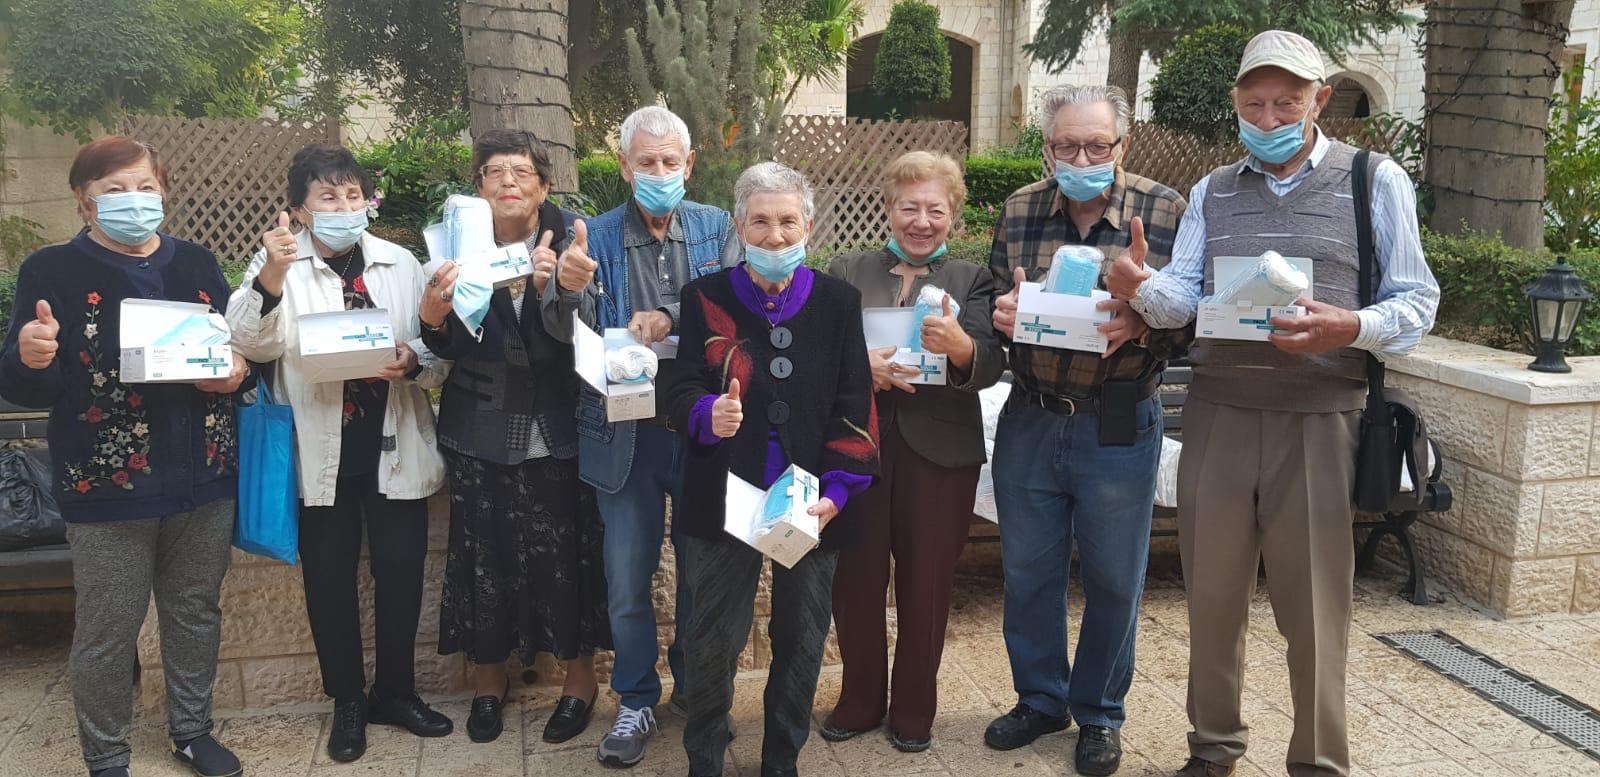 מחמם את הלב ואת החורף : חברי בורסת היהלומים מתגייסים למען ניצולי השואה לקראת החורף בימי הקורונה